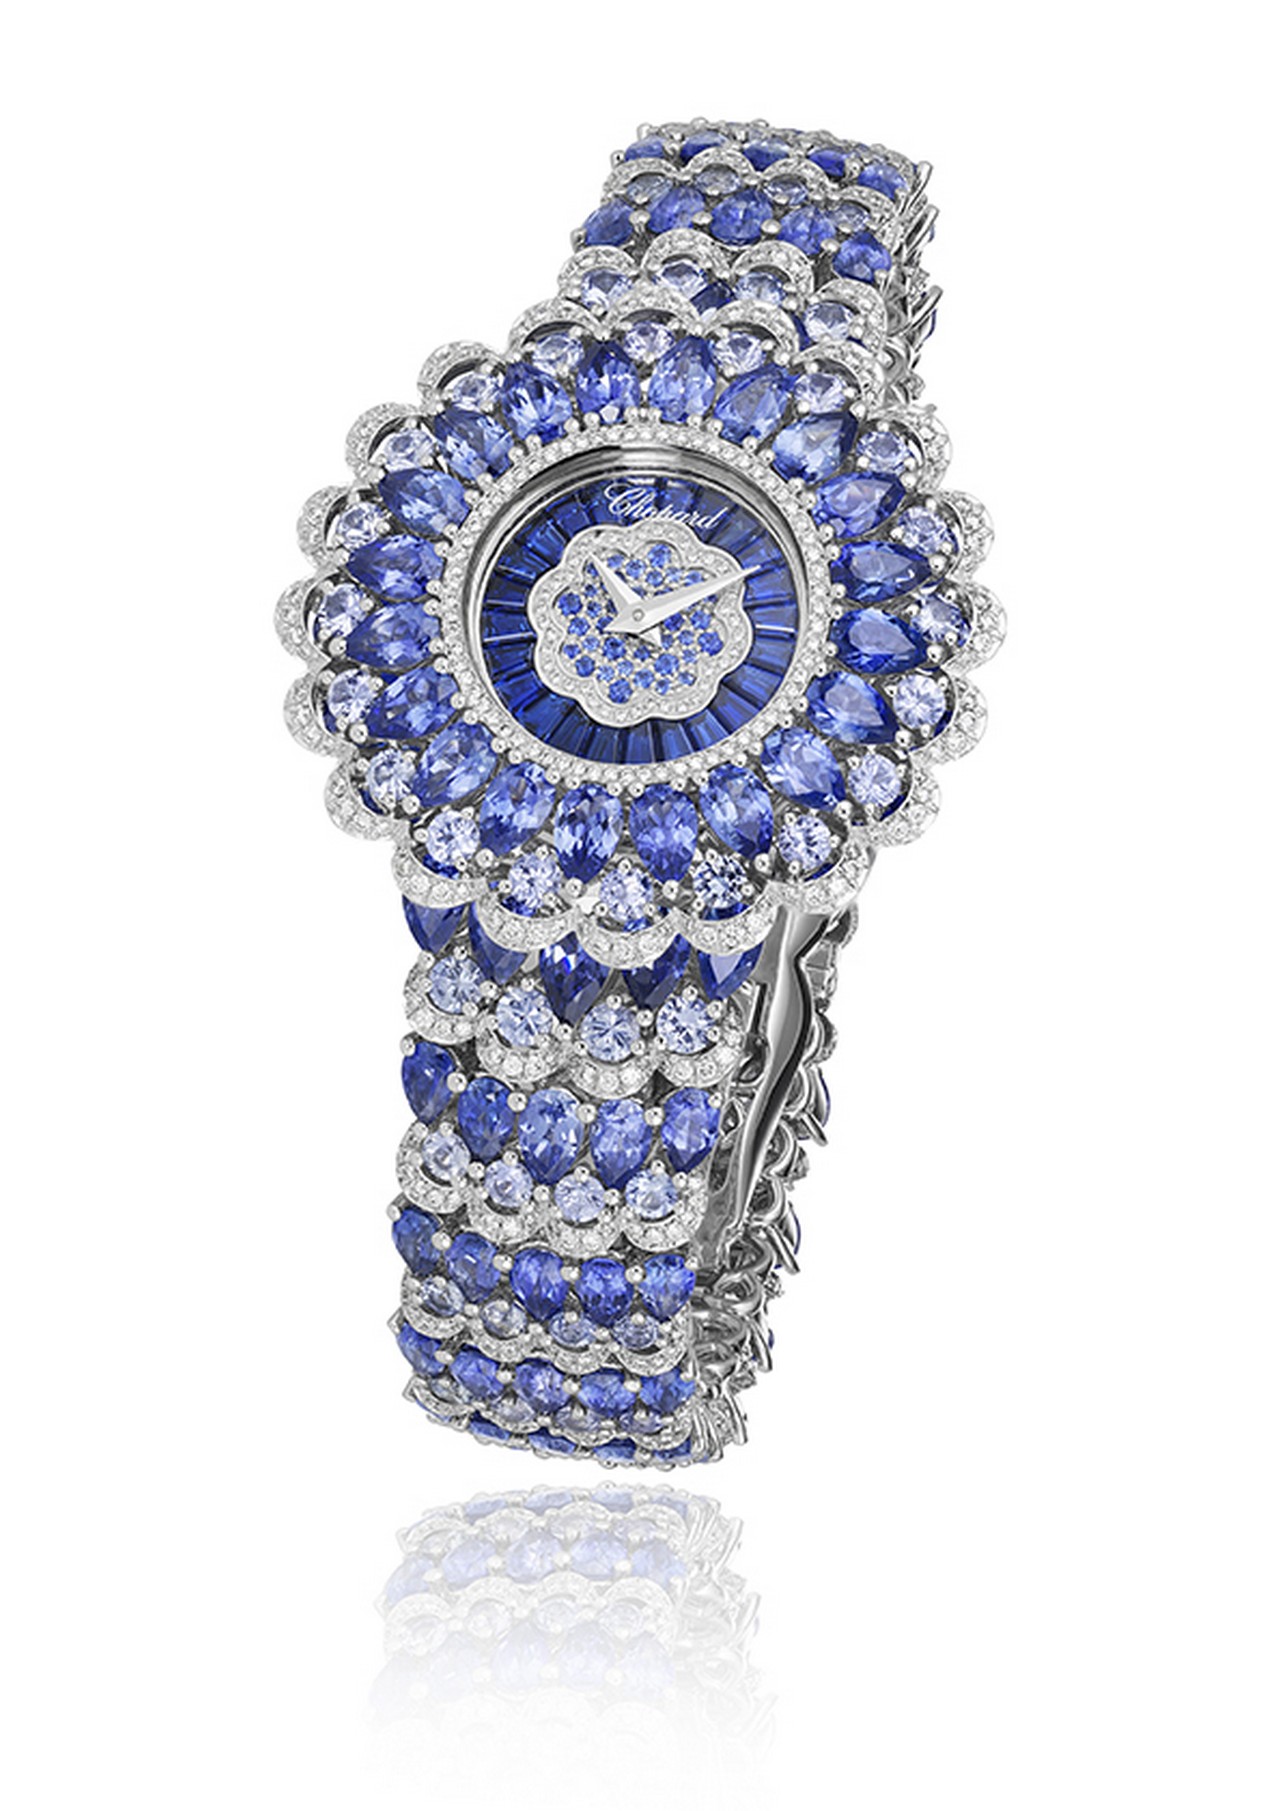 Chopard orologi: i modelli al Grand Prix d’Horlogerie de Genève 2016, le foto